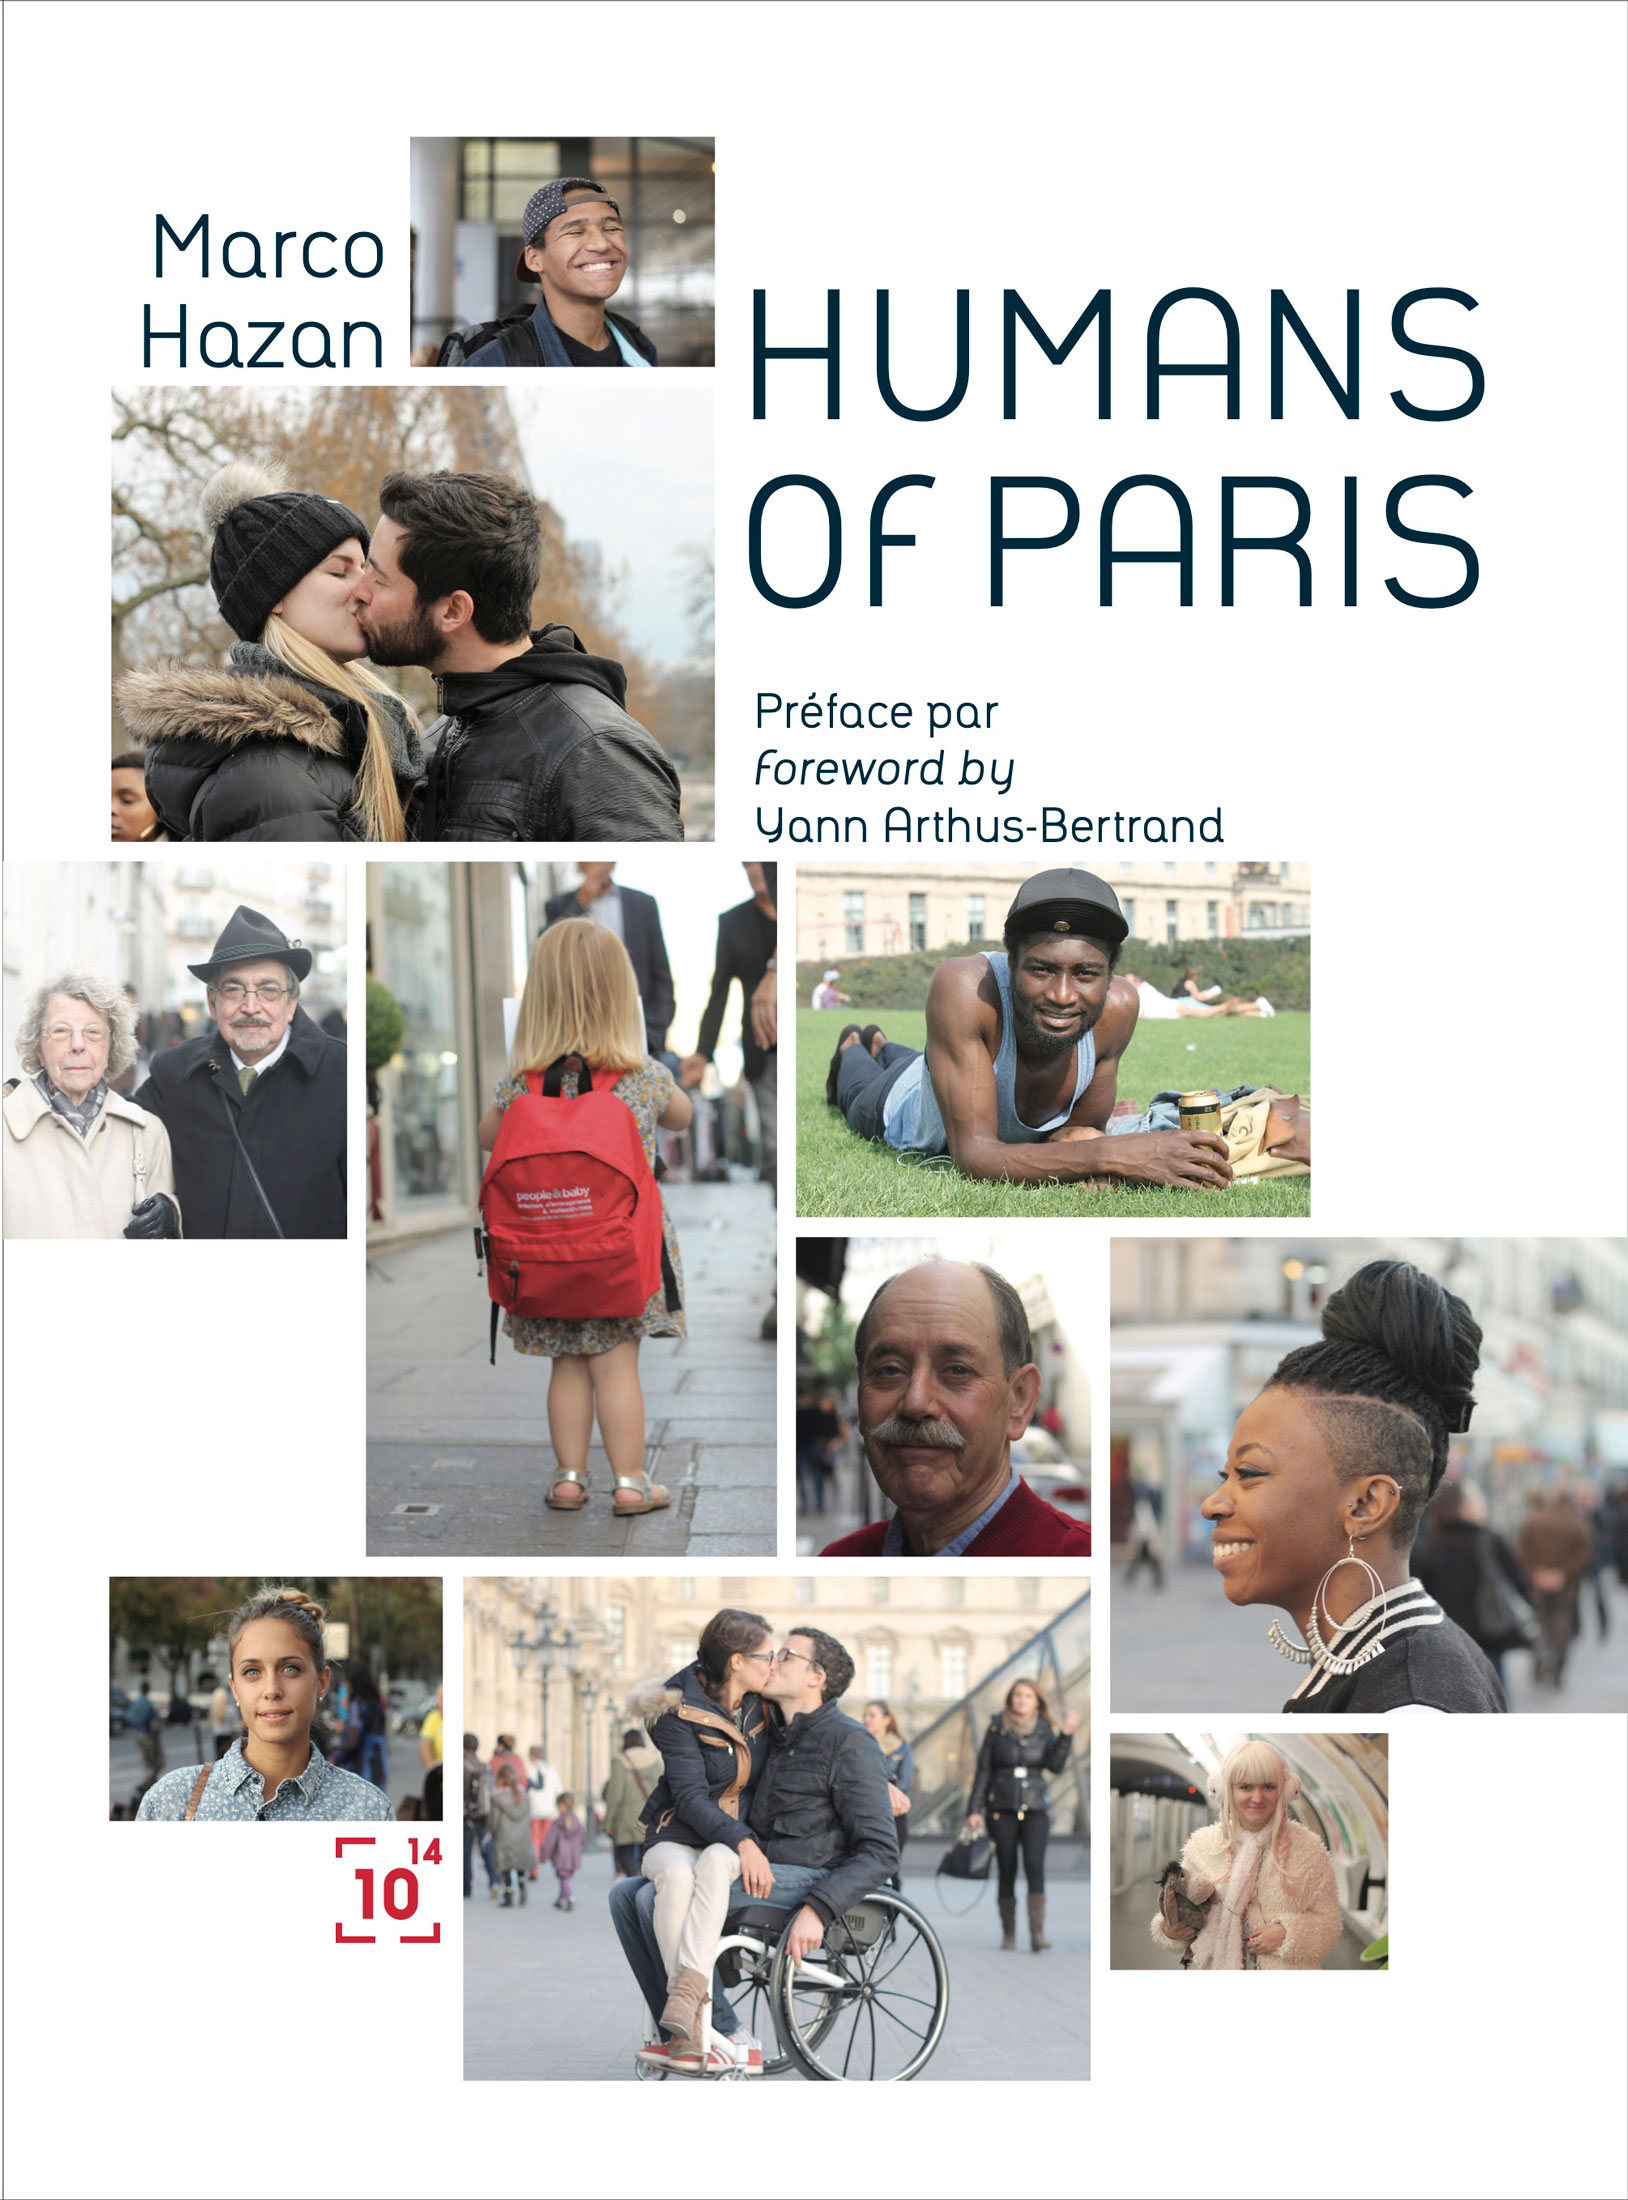 Image de la couverture du livre Humans of Paris, co-réalisé par Nostromo, agence de communication, pour Humans of Paris